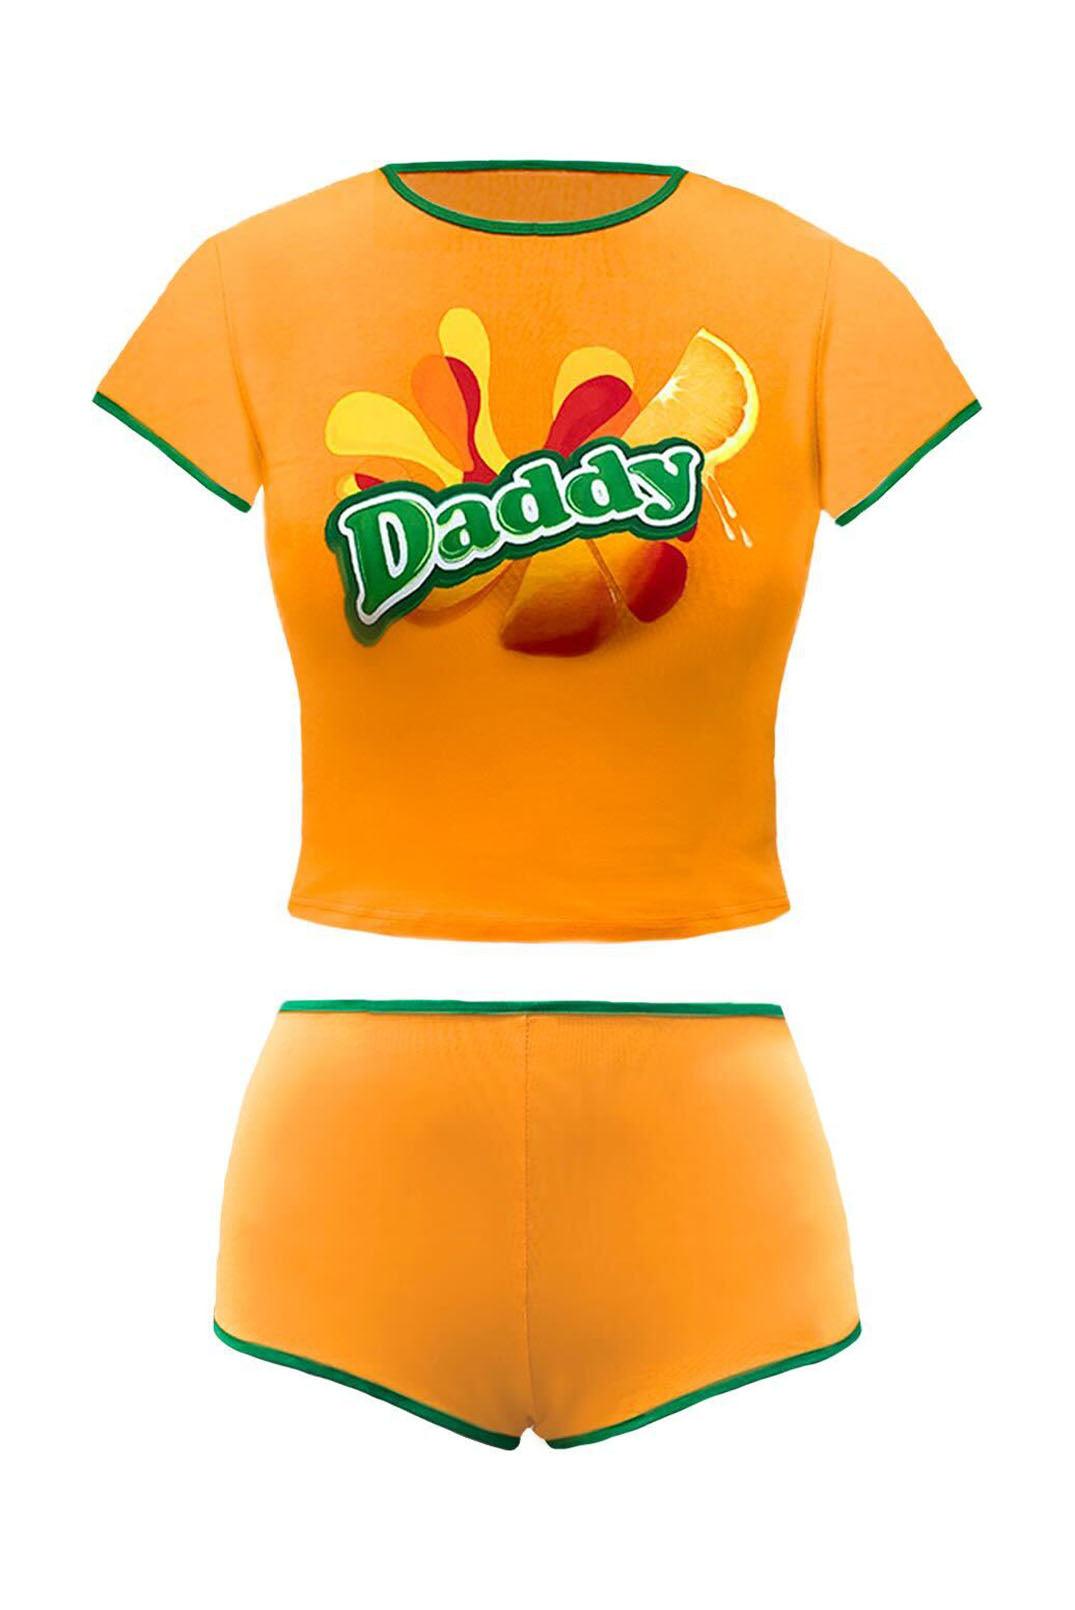 Daddy Juicy Orange Mirinda Booty Shorts & Ringer Baby Tee - Elsie & Fred